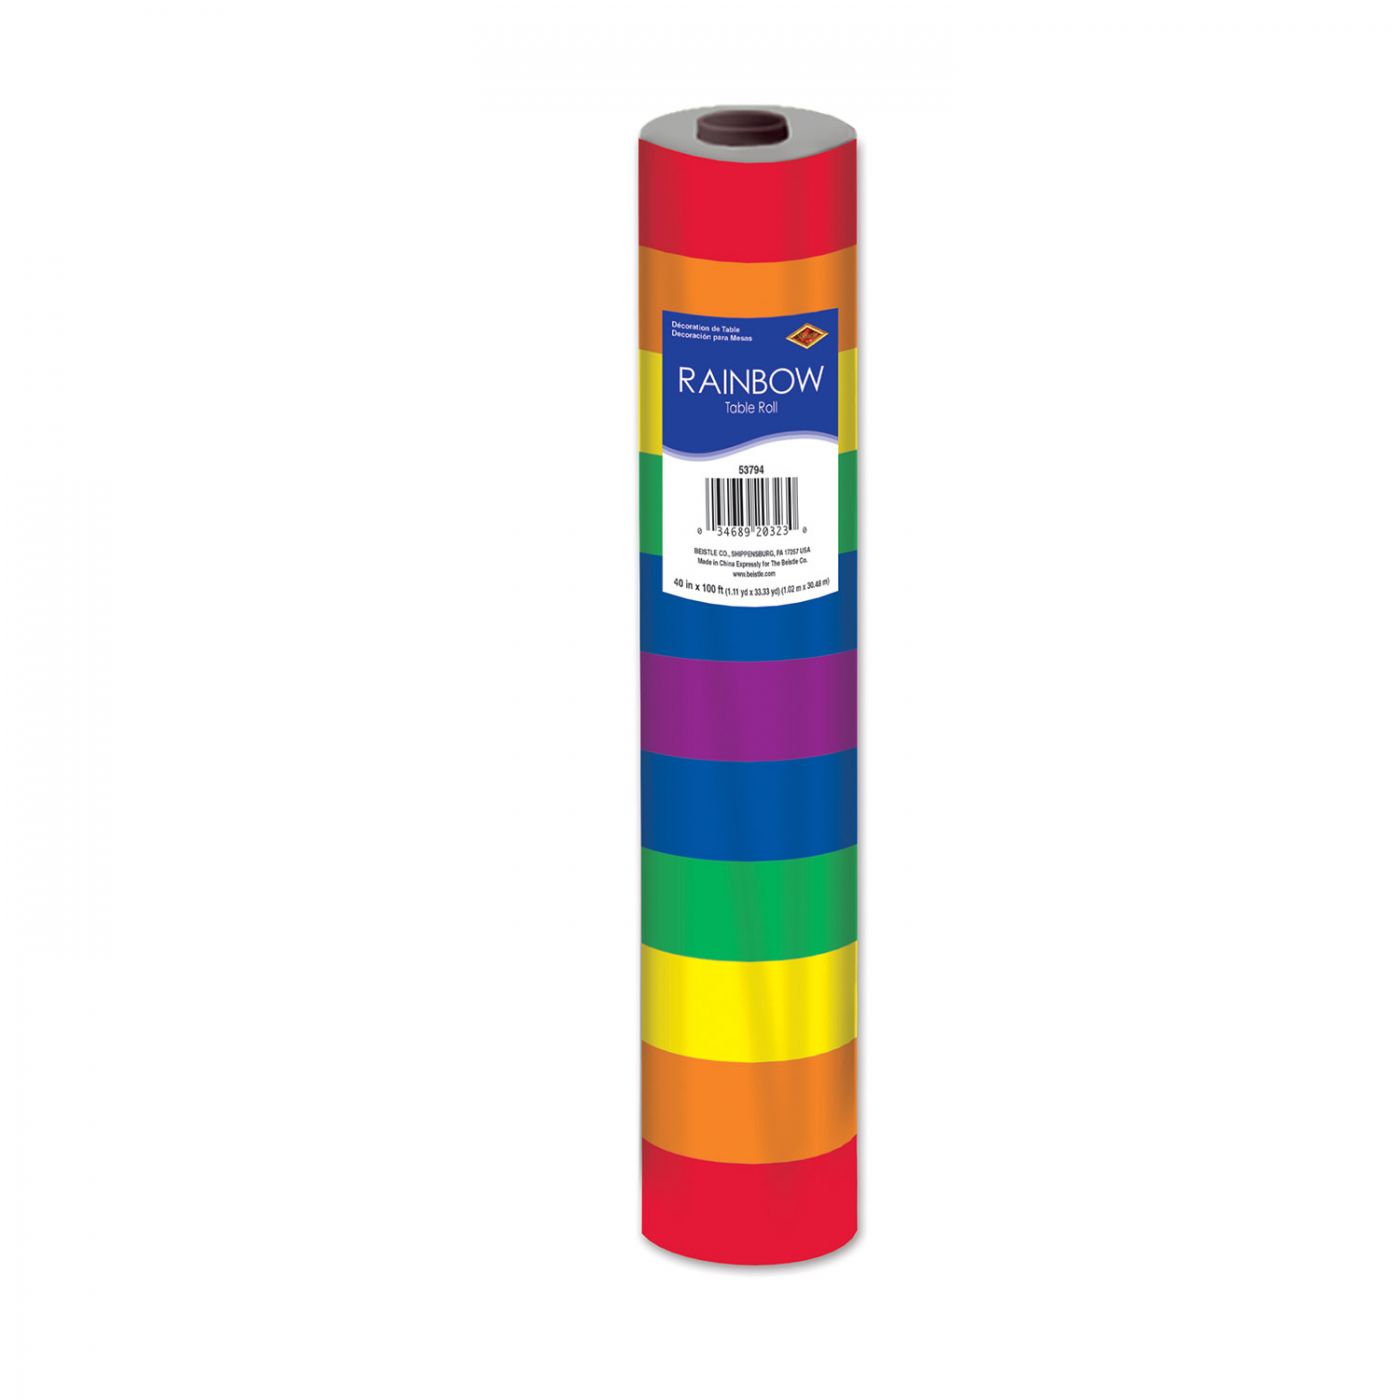 Rainbow Table Roll image